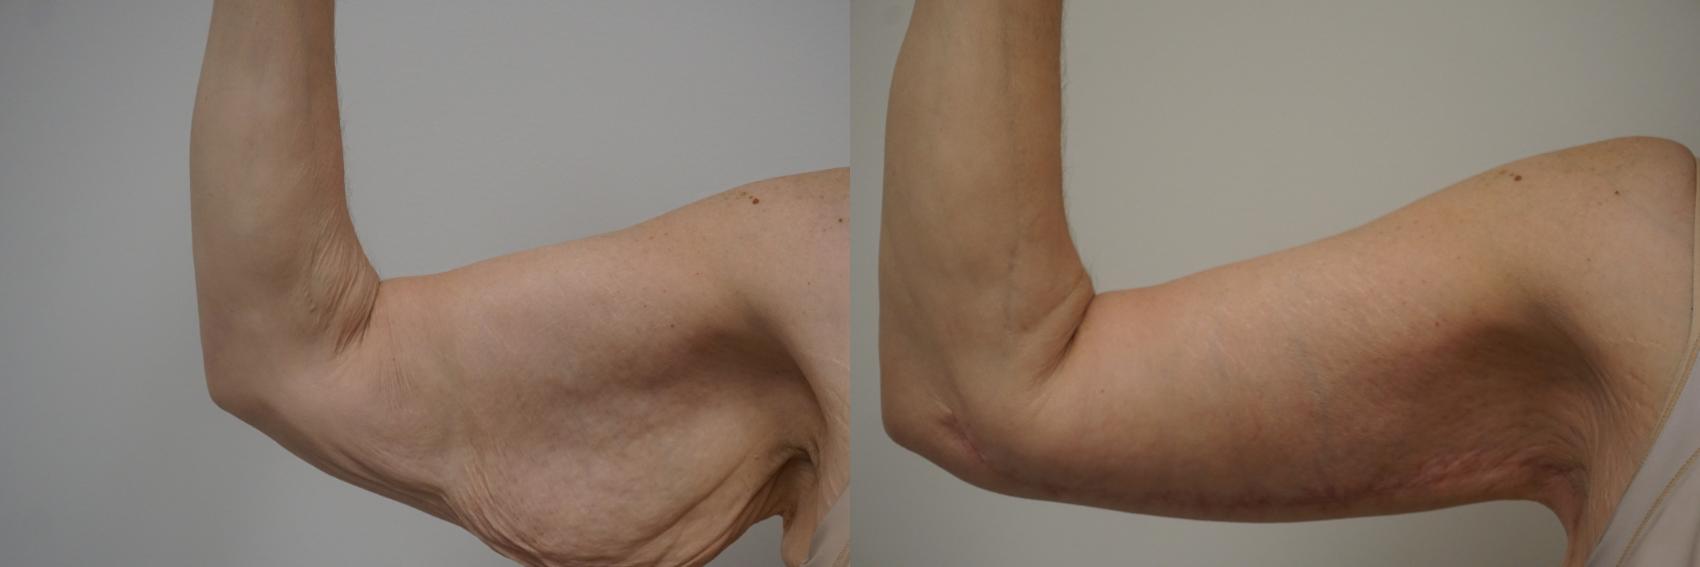 Brachioplasty Before & After Photos Patient 115 | Gilbert ...